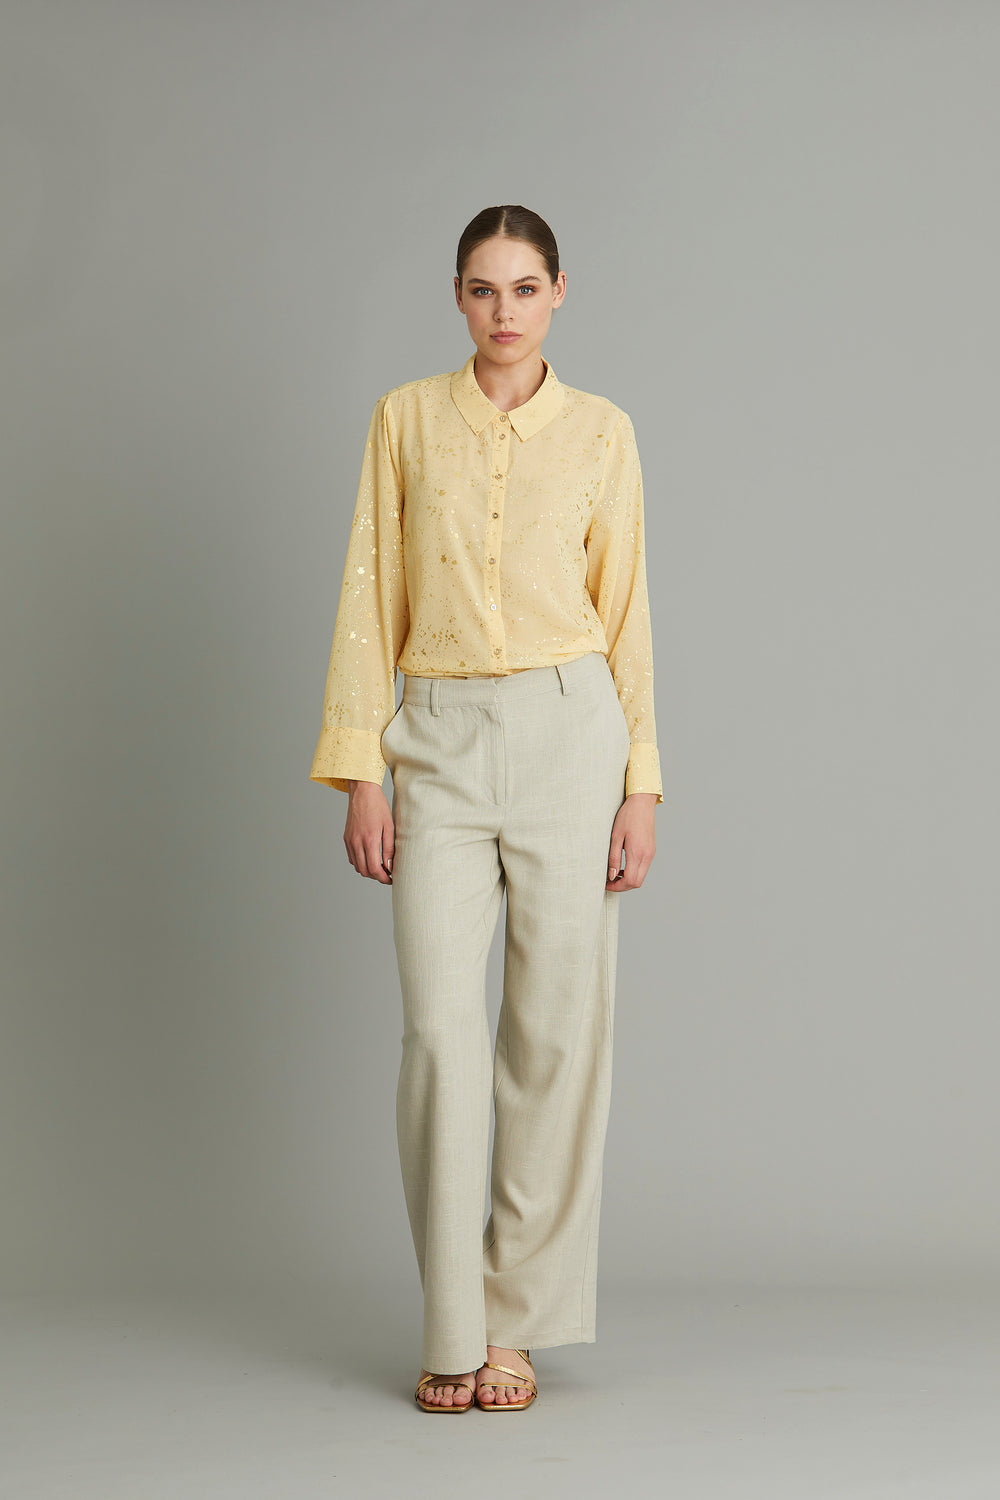 Rue de Femme Shivani shirt RdF SHIRTS 716 Mellow yellow